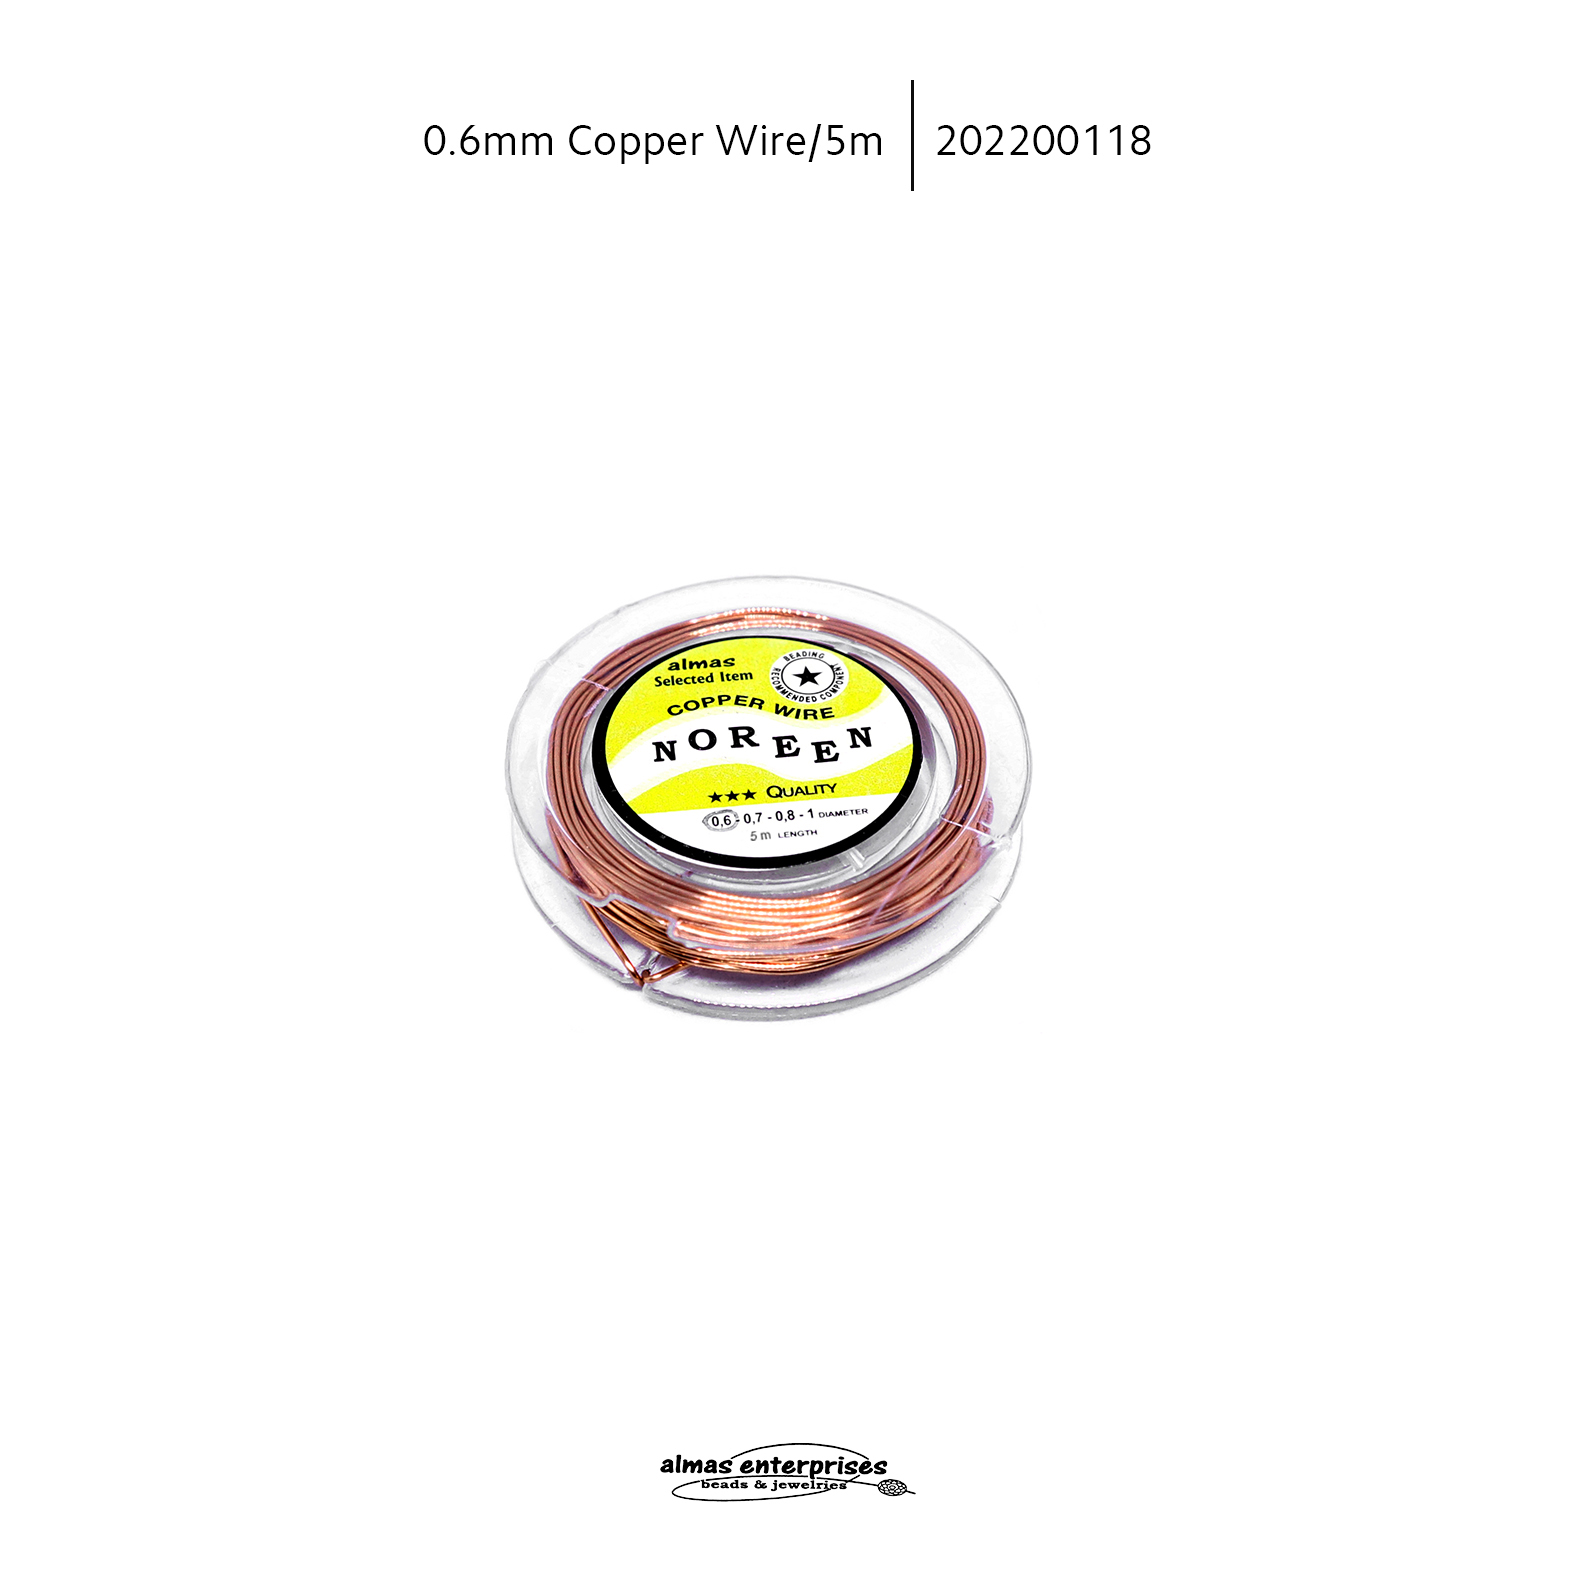 0.6mm Copper Wire/5m